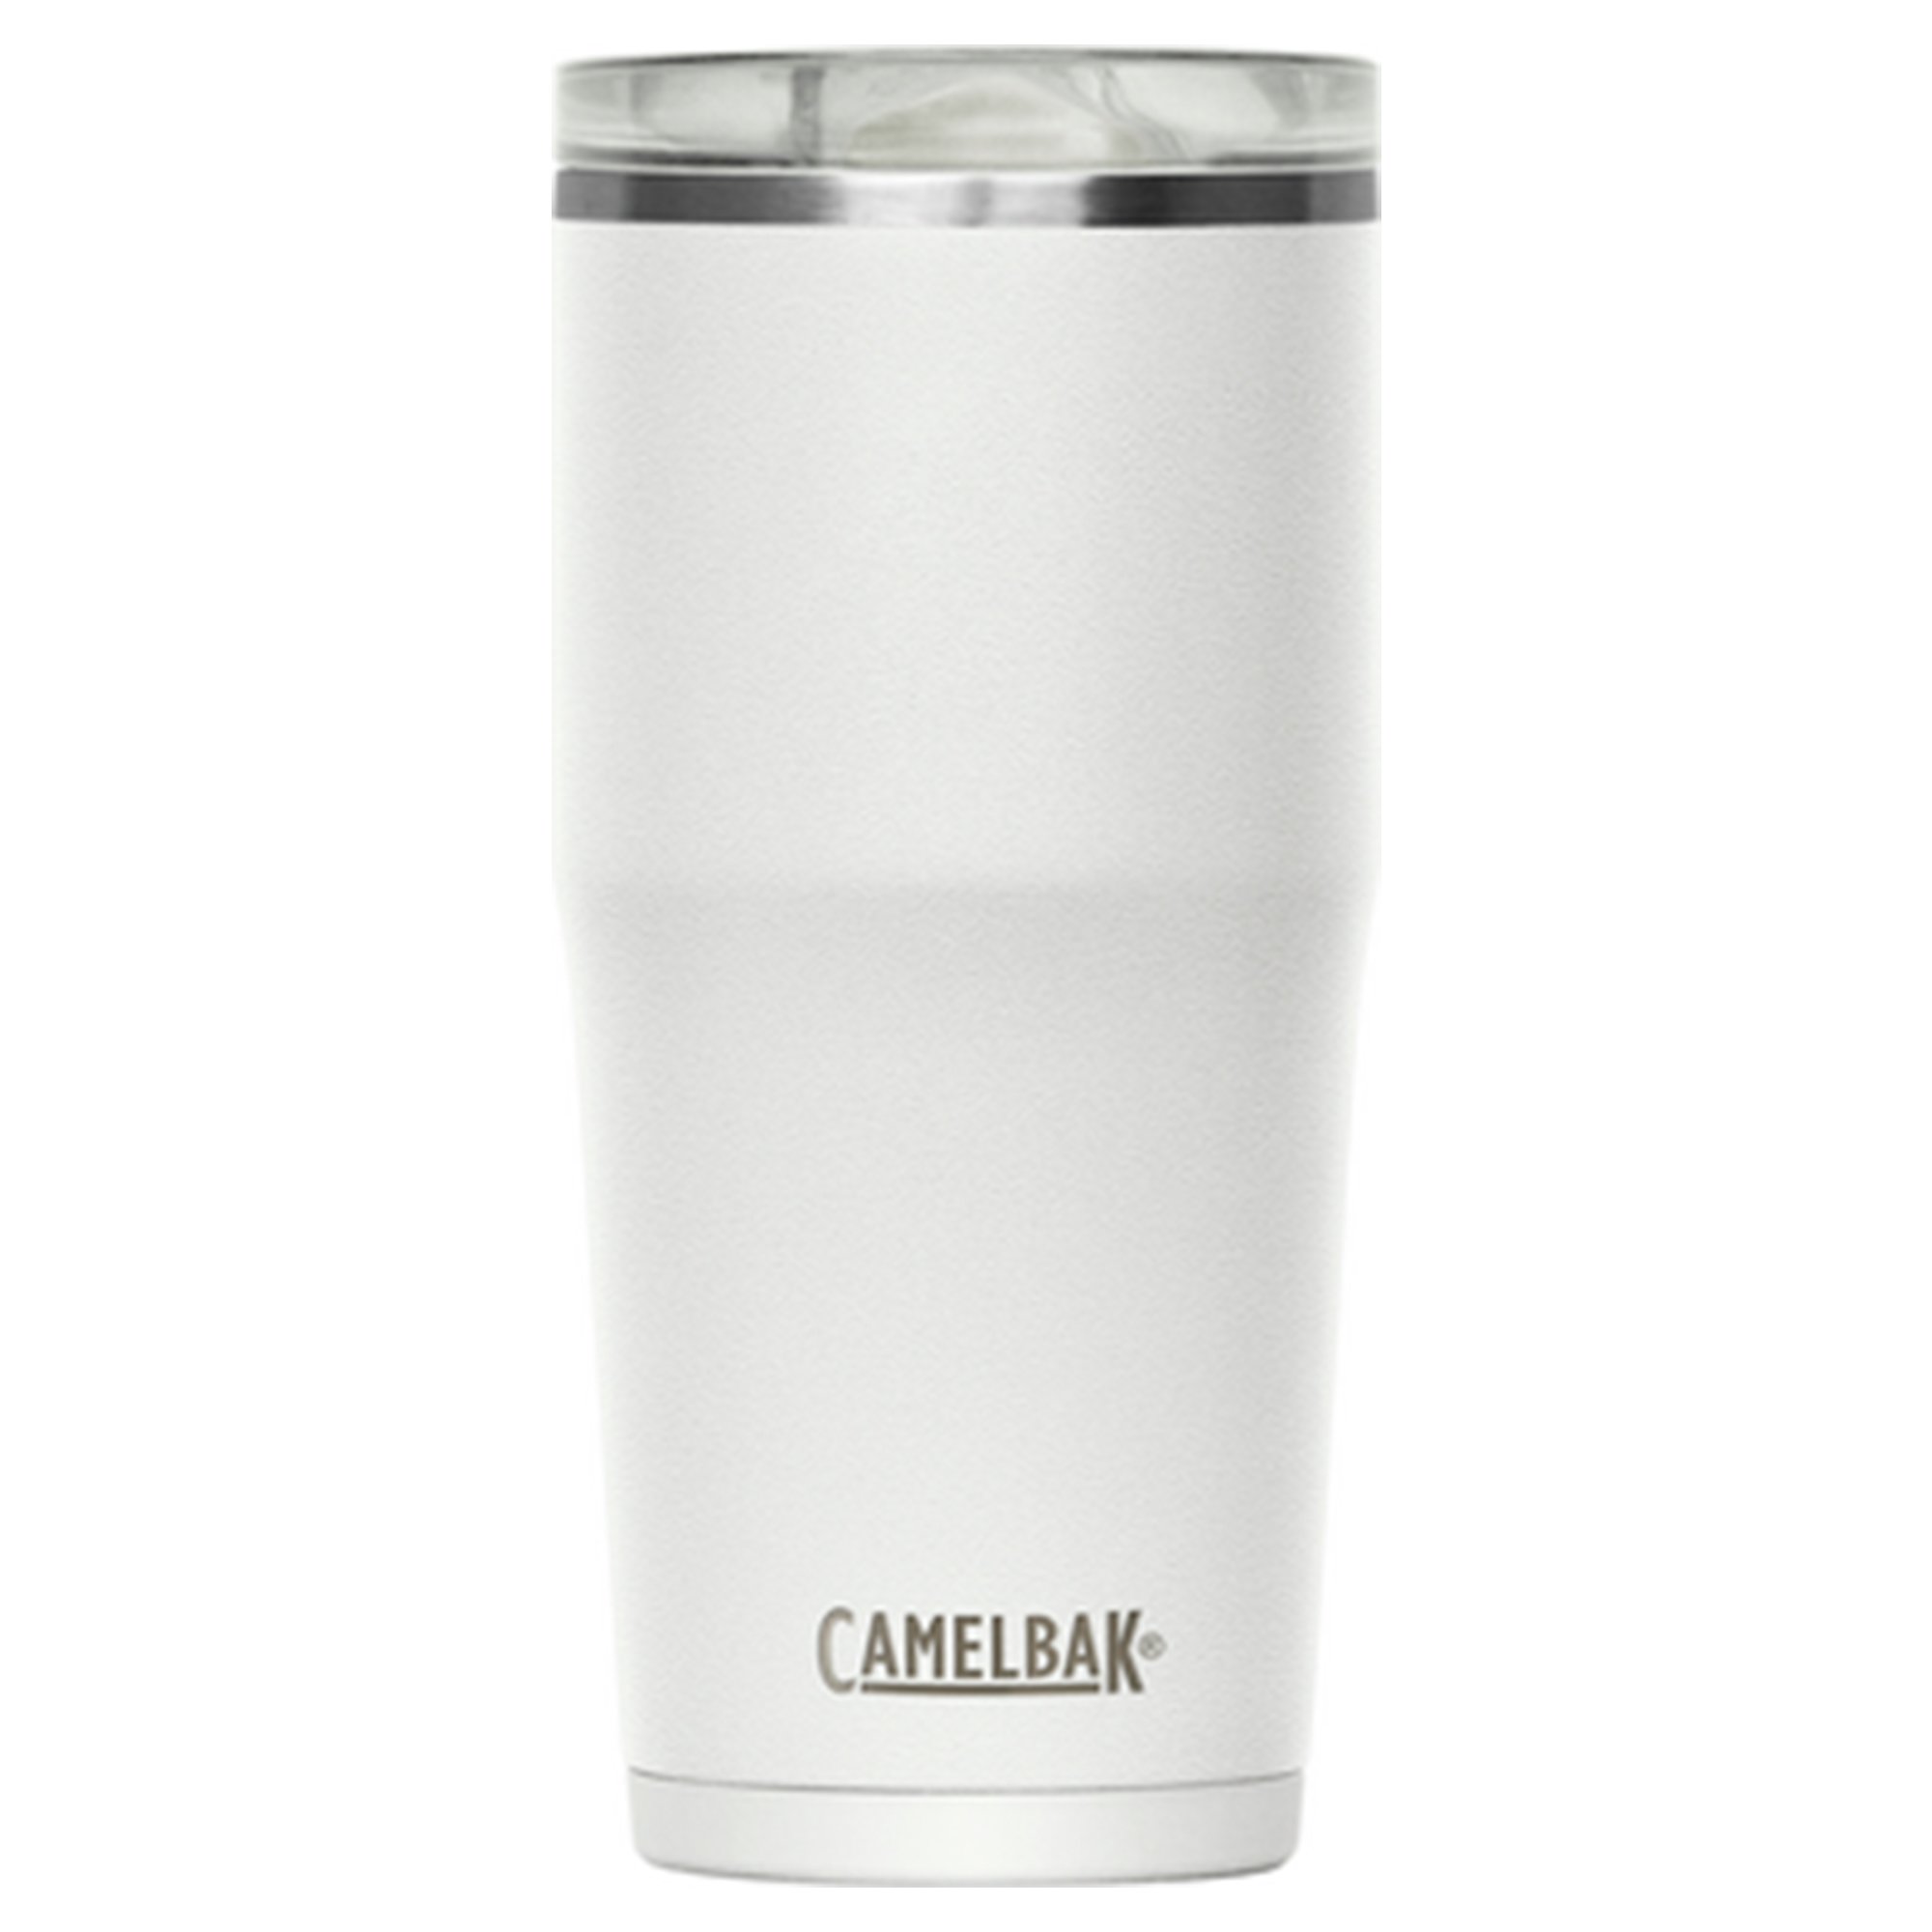 Camelbak Thrive Tumbler termosmugg 0,6 liter white